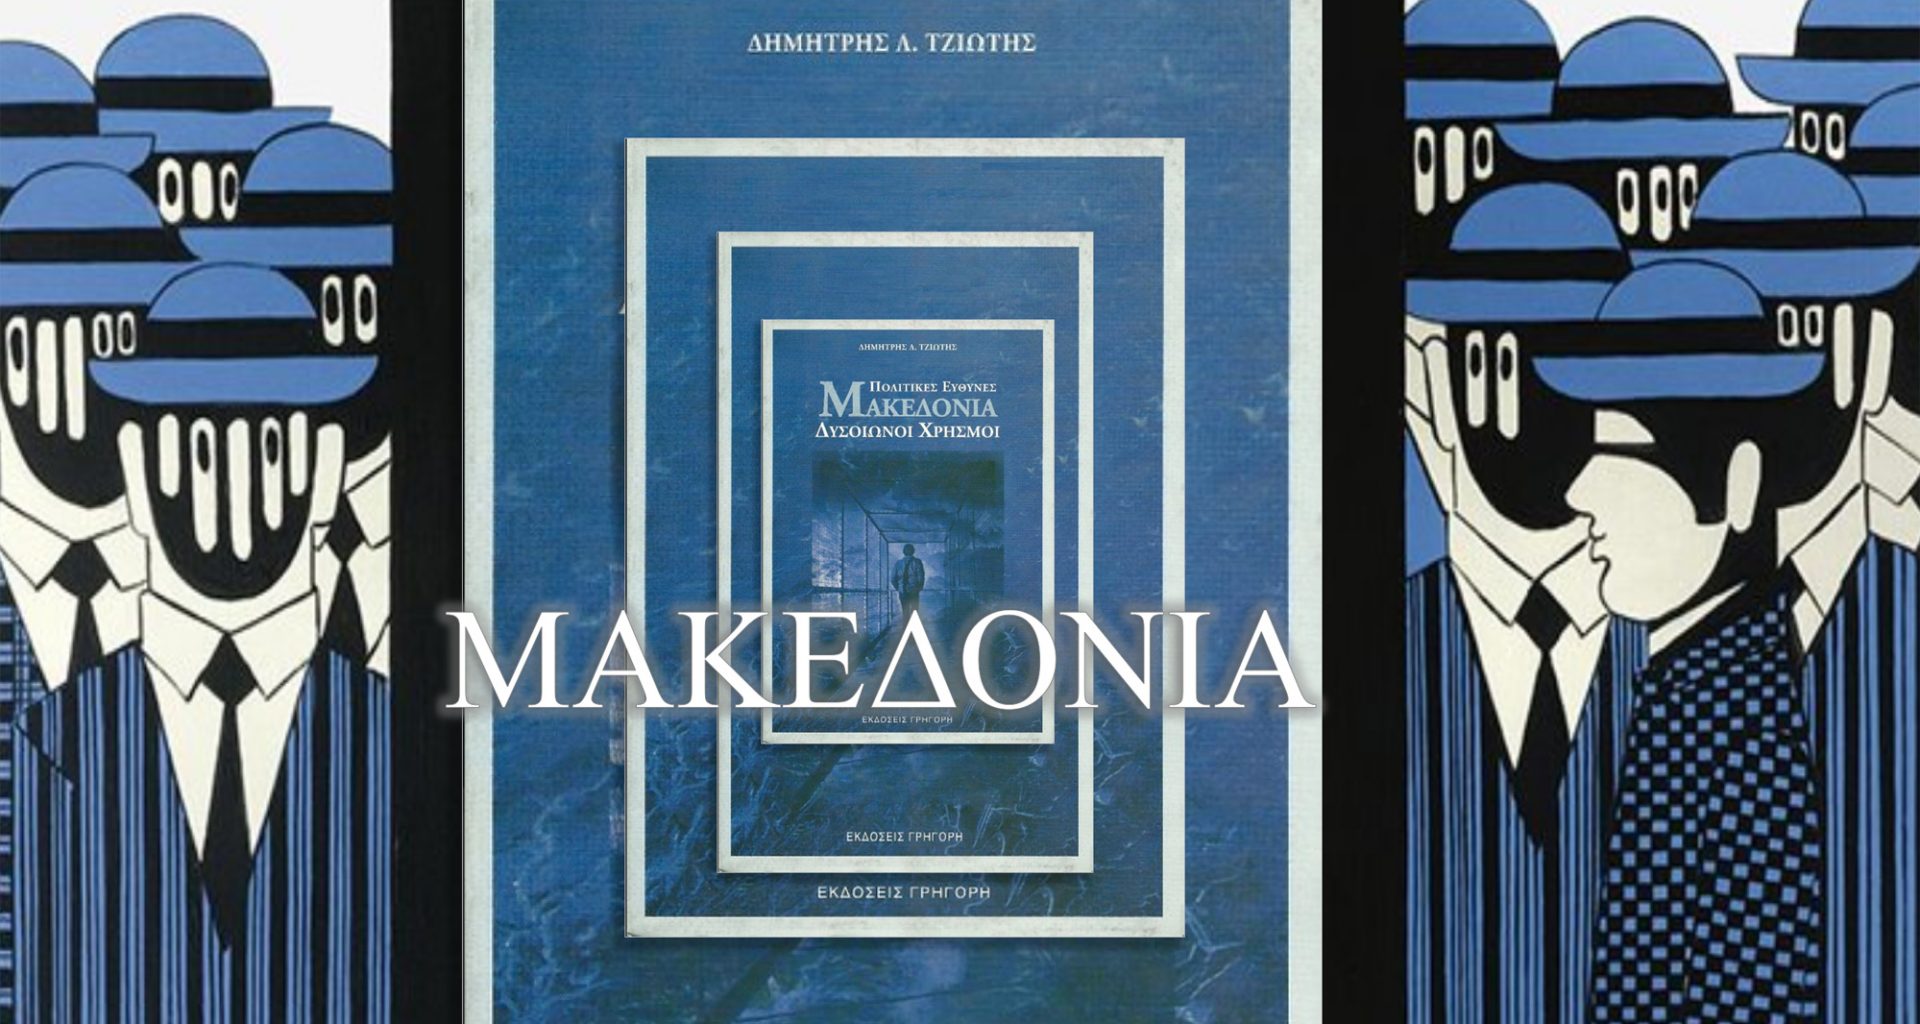 Μακεδονία - Πολιτικές Ευθύνες, Δυσοίωνοι χρησμοί - Βιβλίο του Δημήτρη Τζιώτη